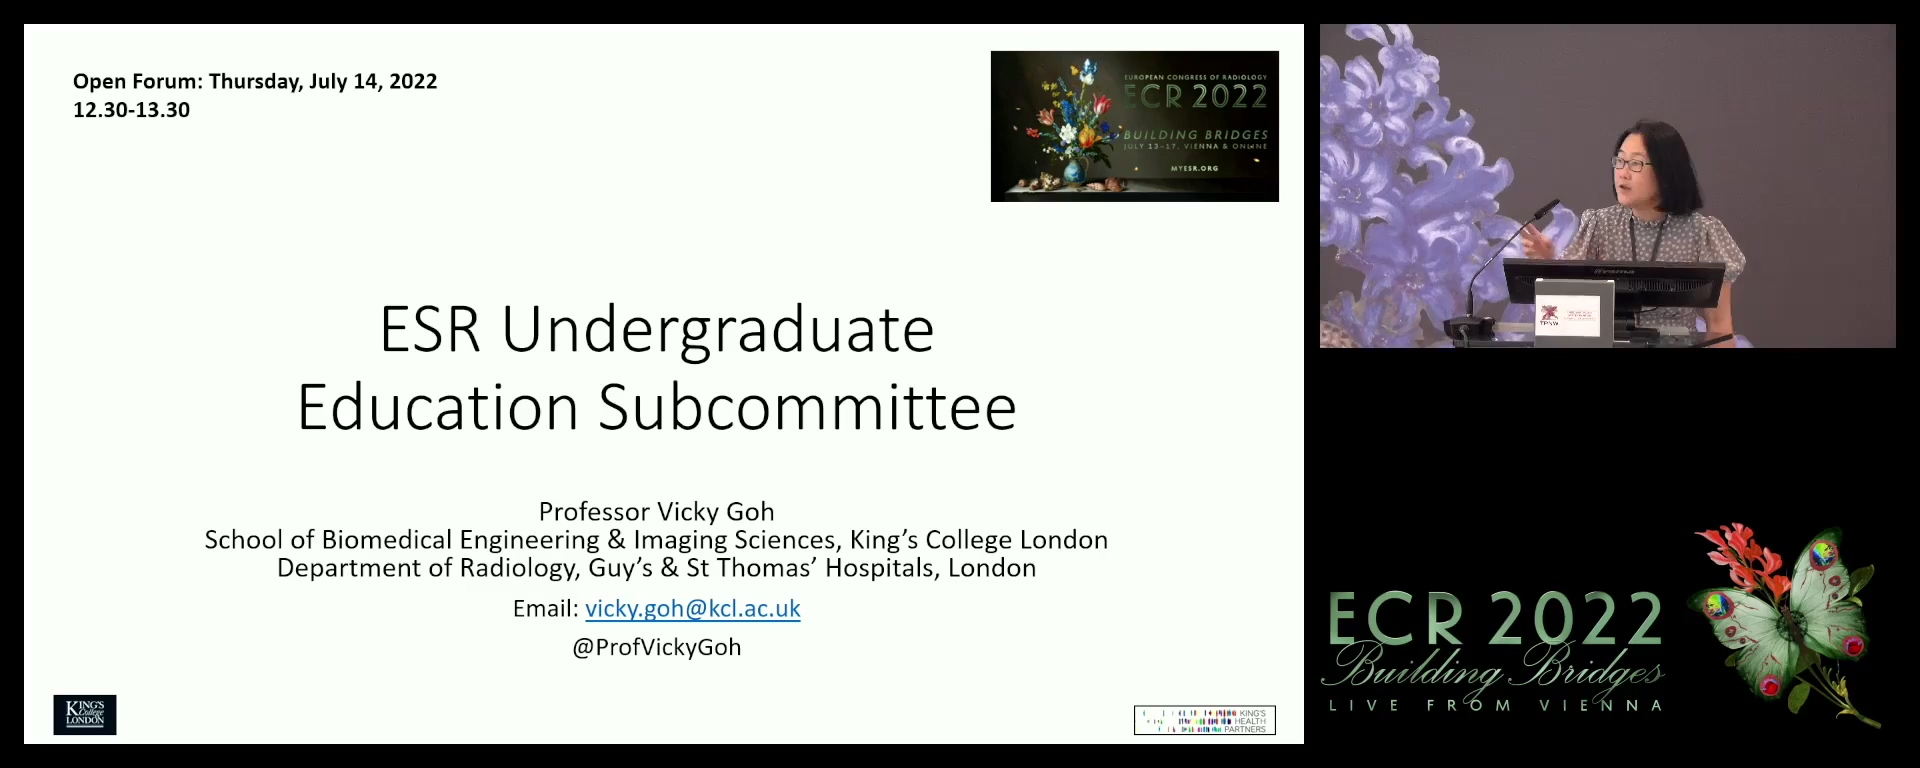 ESR Undergraduate Education Subcommittee - Vicky J. Goh, London / UK